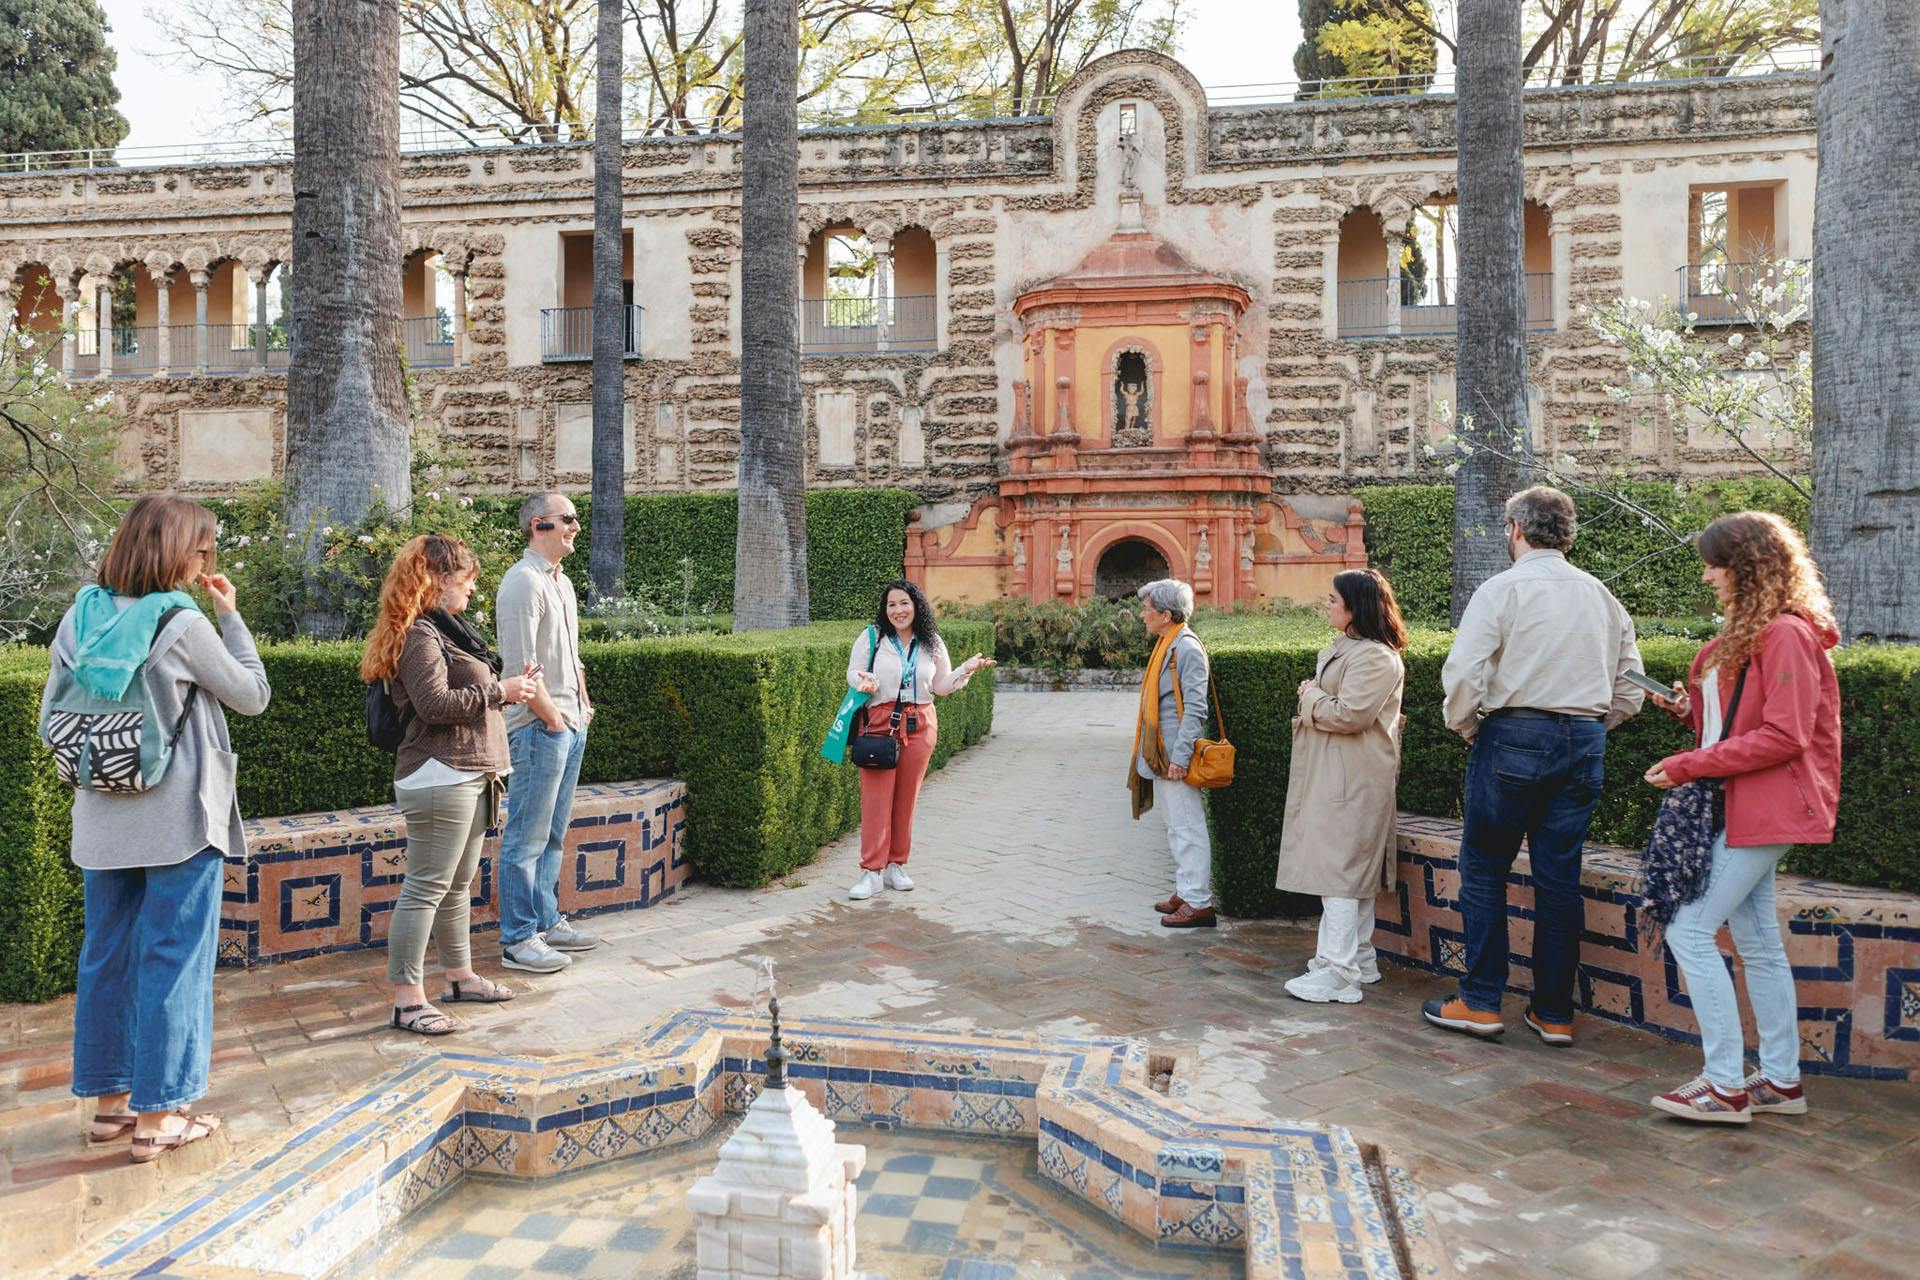 Tour mit VIP-Frühzugang zum Königlichen Alcázar von Sevilla